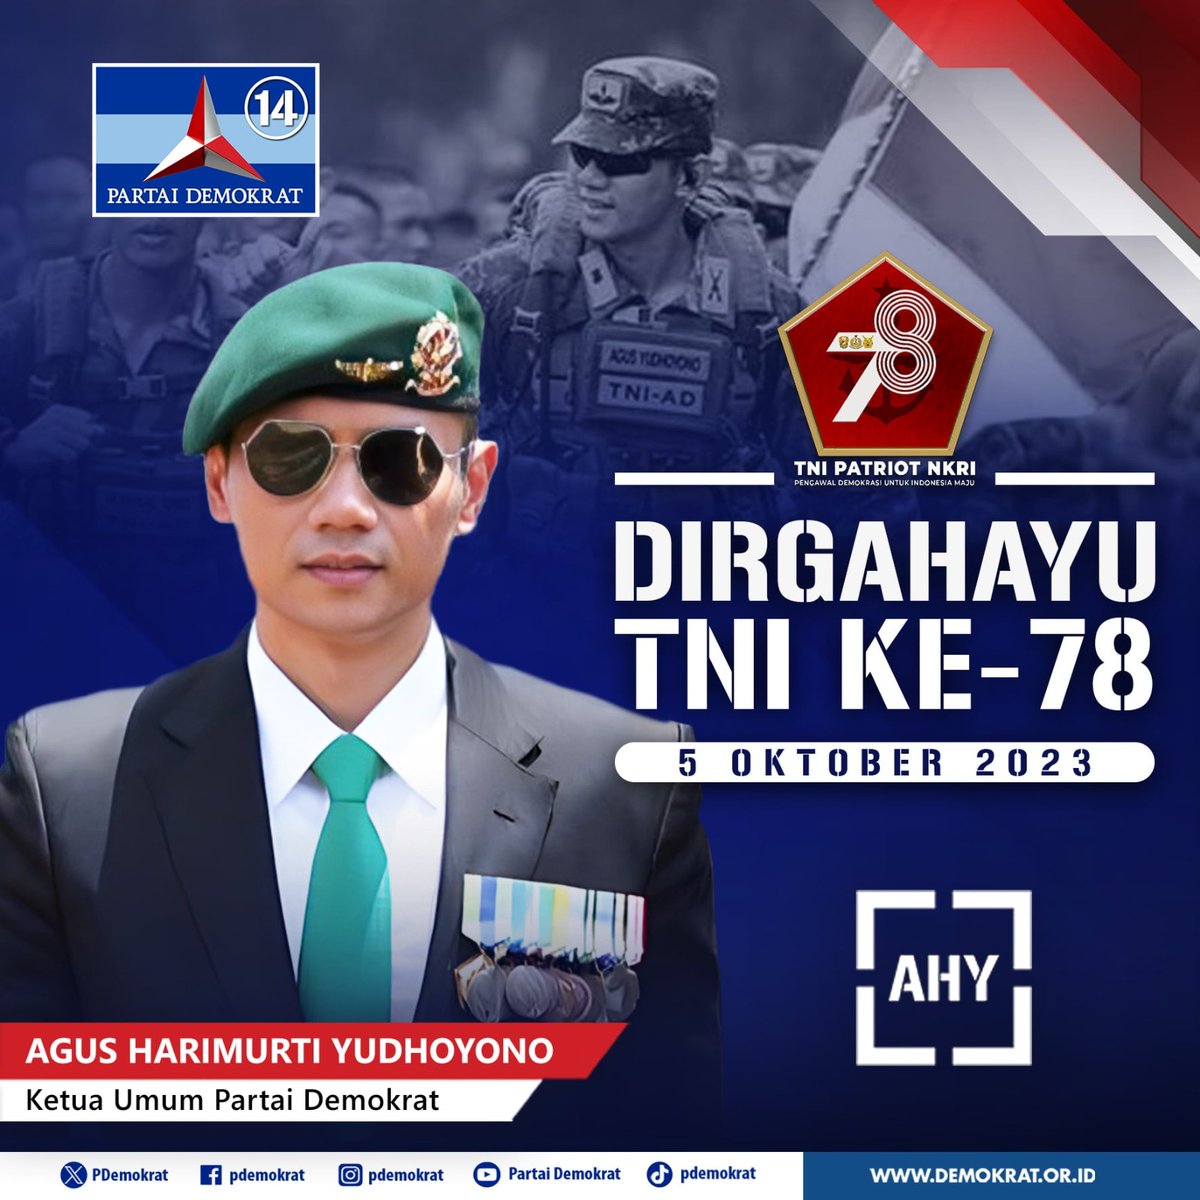 DIRGAHAYU TNI KE-78

#partaidemokrat #demokratindonesia #nkri #dirgahayutni78